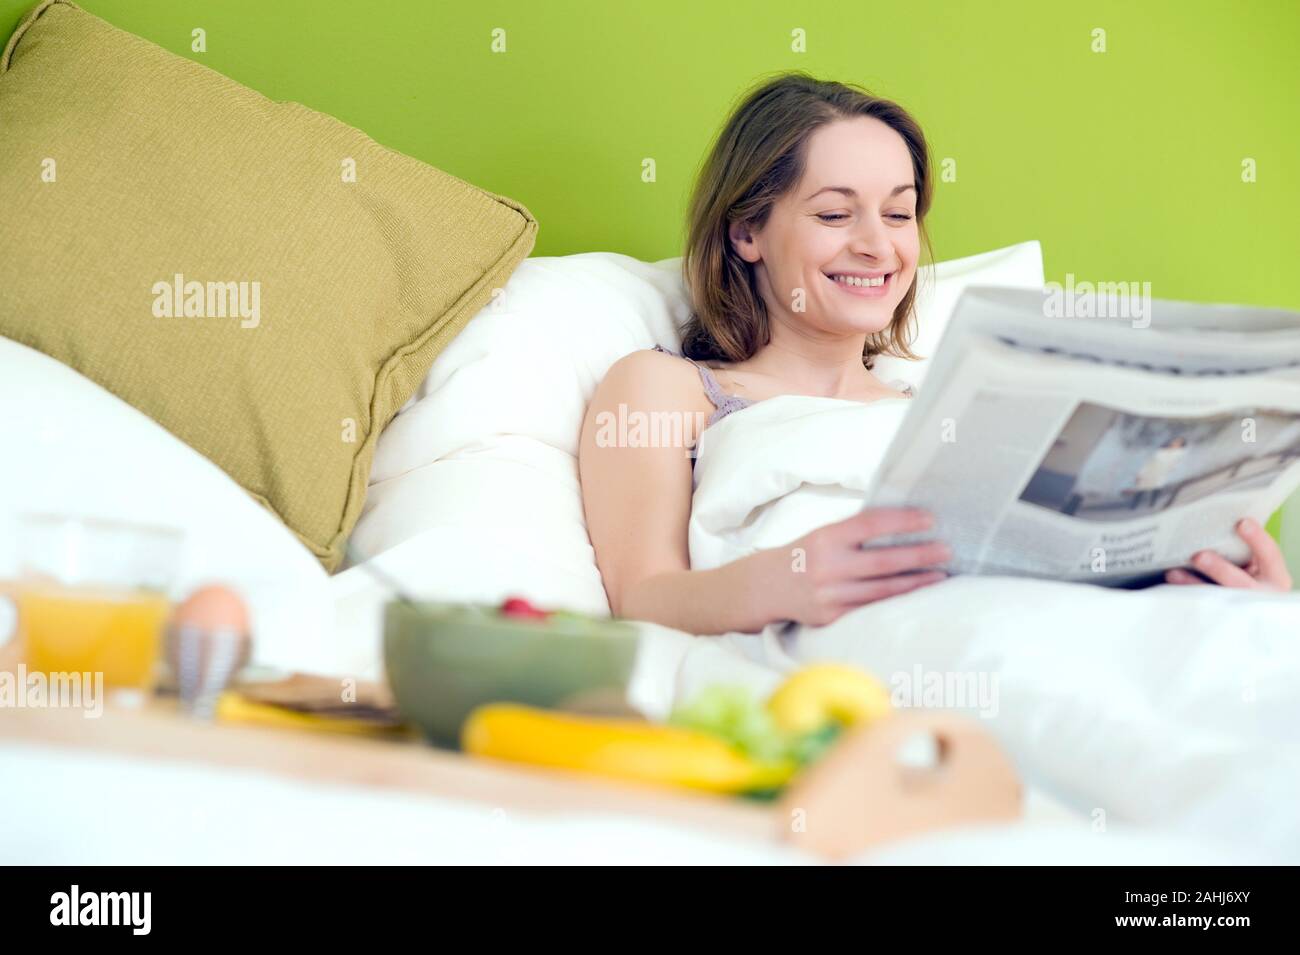 25 -30 Bett im schläft jährige Frau und liest die Zeitung, señor:Yes Foto de stock